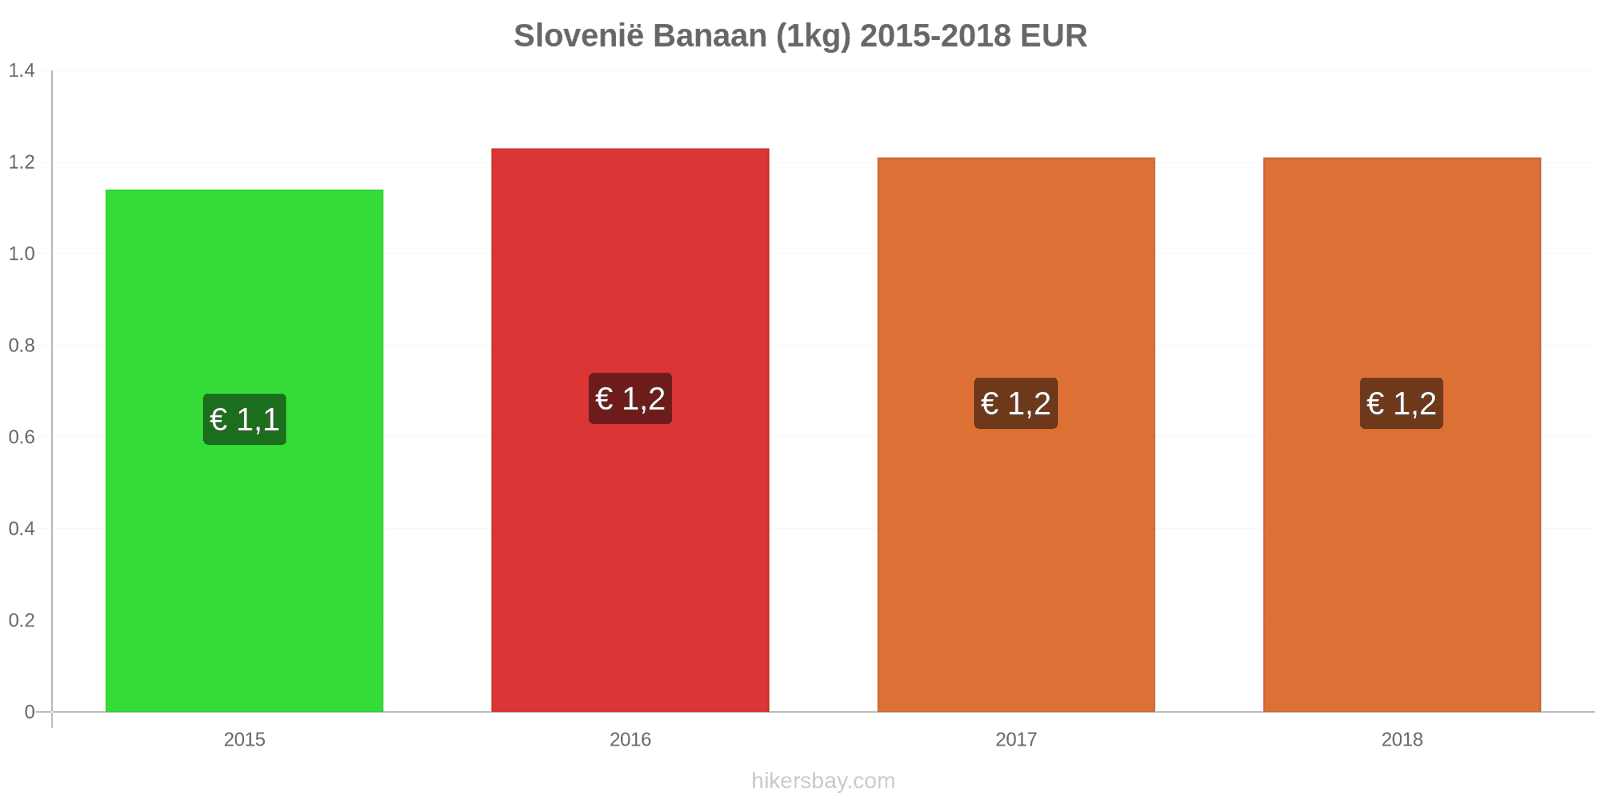 Slovenië prijswijzigingen Bananen (1kg) hikersbay.com